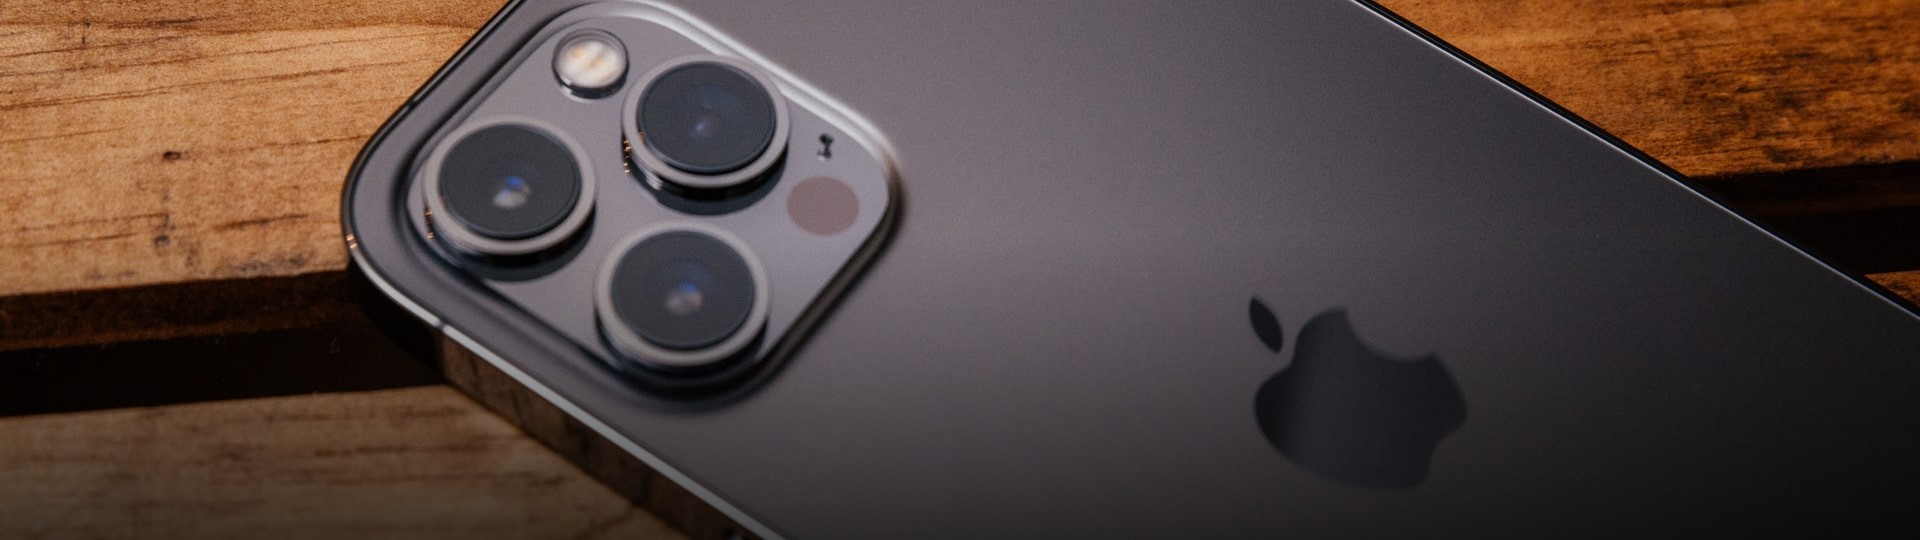 Apple představil novou generaci telefonů iPhone